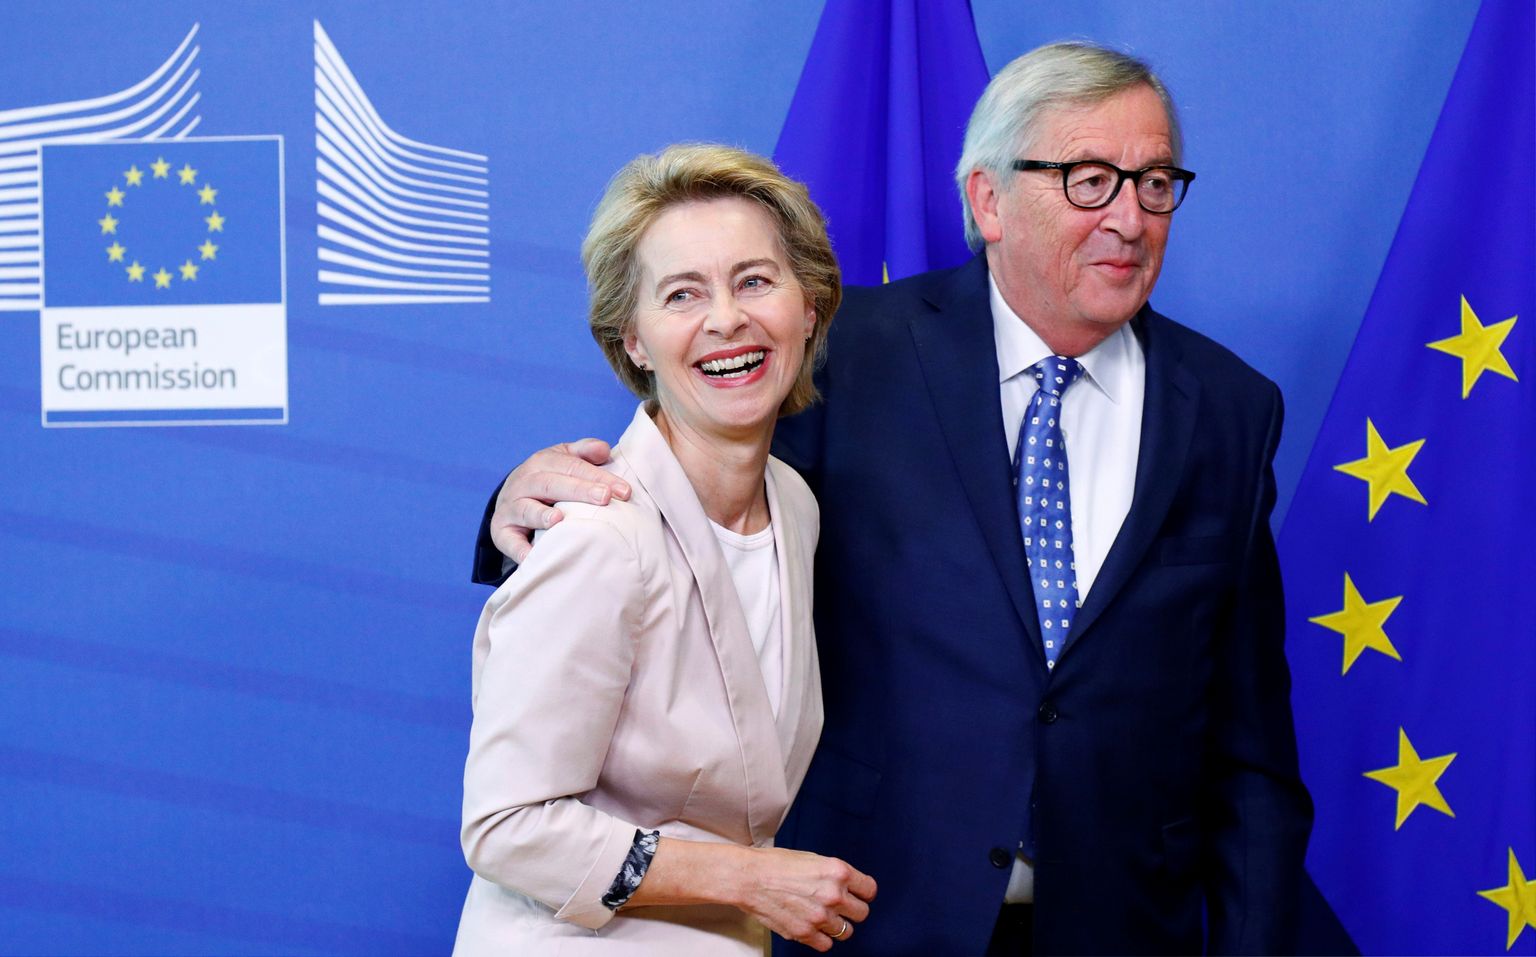 Saksamaa kaitseminister Ursula von der Leyen (vasakul) peaks võtma Euroopa Komisjoni presidendi ametikoha üle Jean-Claude Junckerilt.